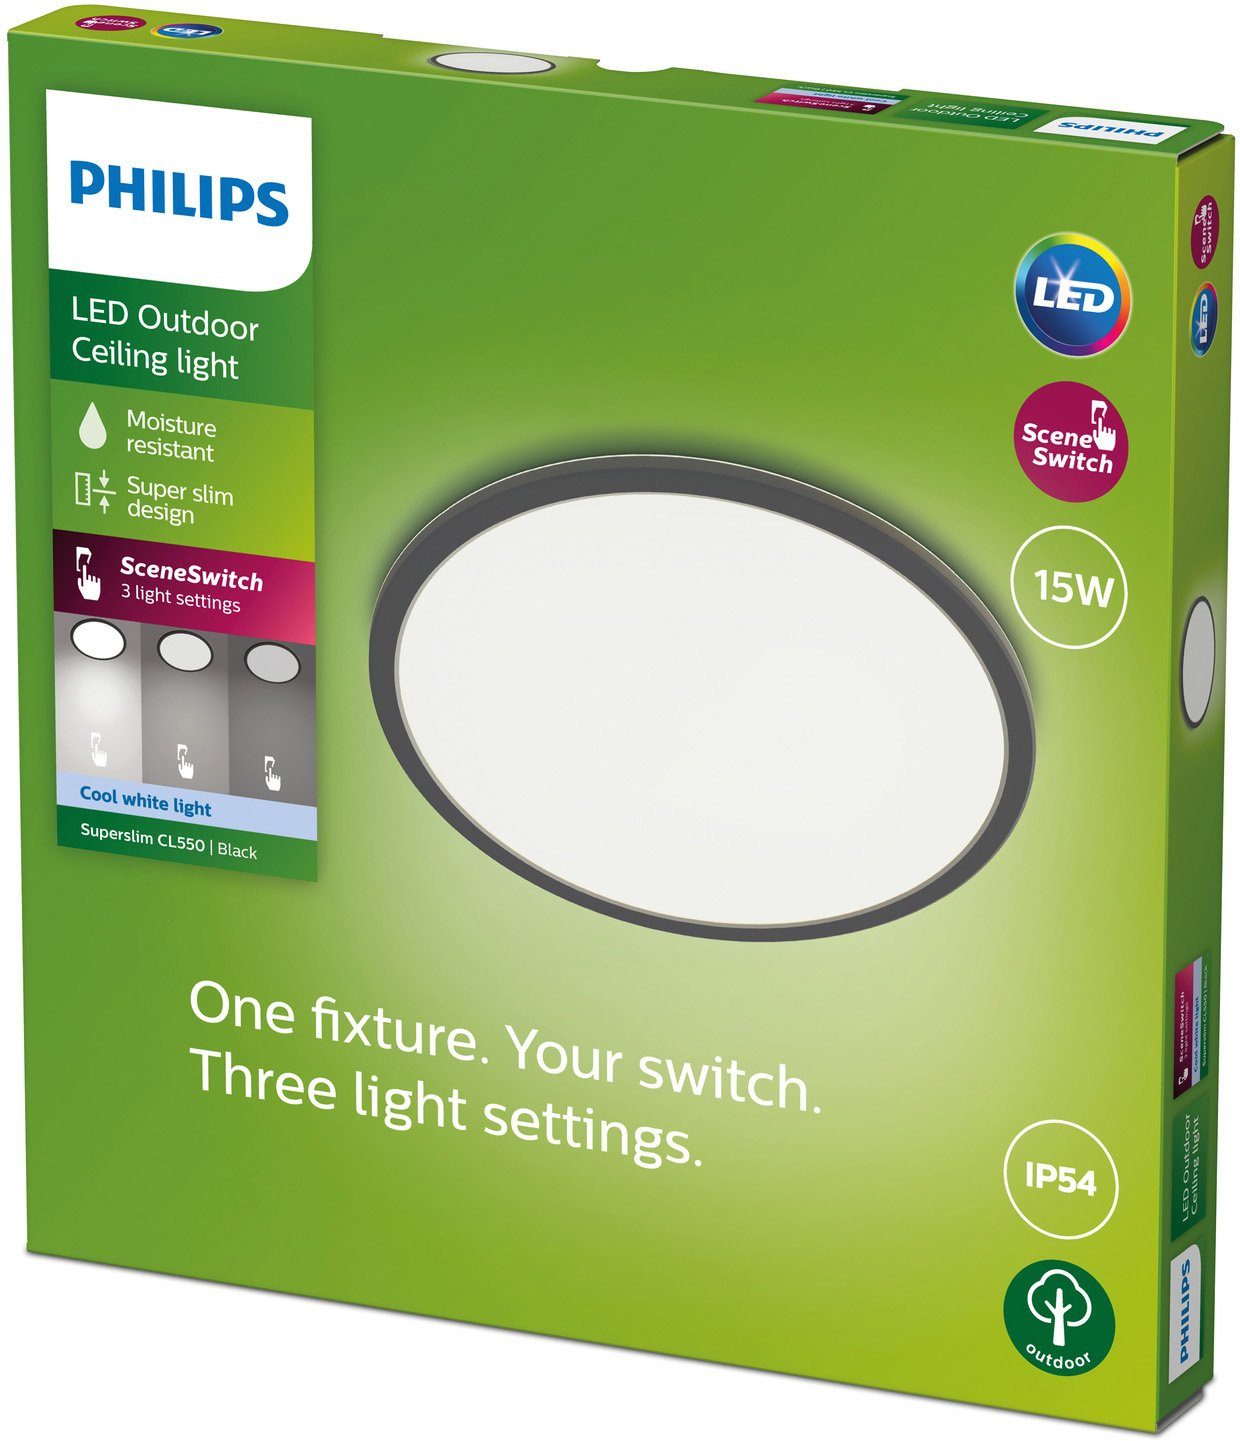 Warmweiß, 15W Superslim, LED Schwarz Deckenleuchte Philips integriert, 4000K Ceiling fest